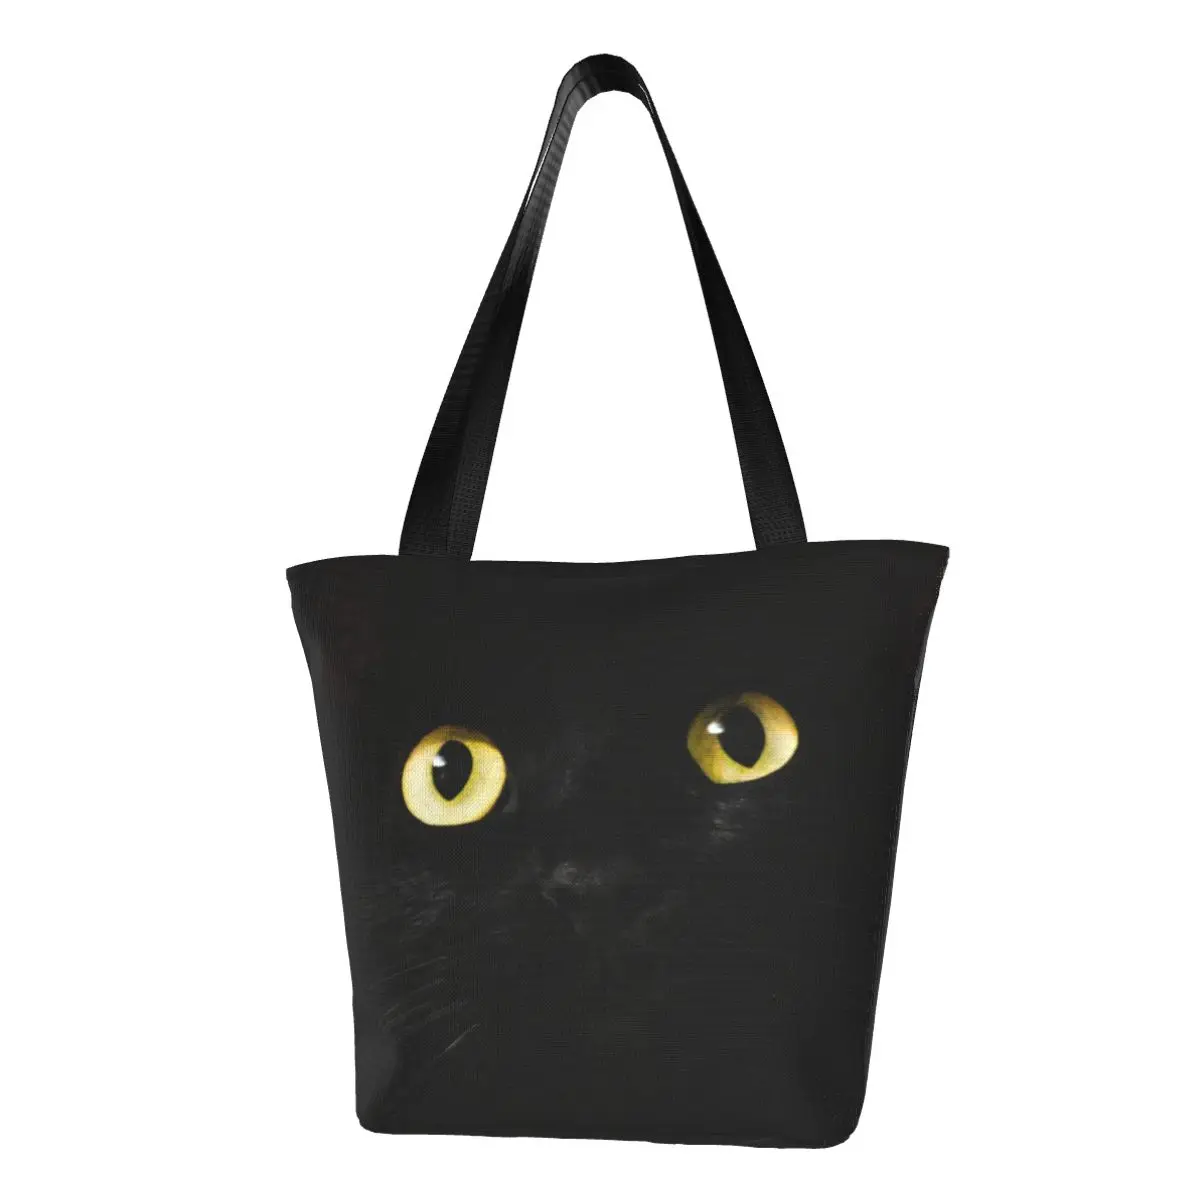 

Сумка-шоппер с рисунком черного кота, Женская тканевая уличная сумочка-тоут на плечо с рисунком странных животных, кавайный дизайн